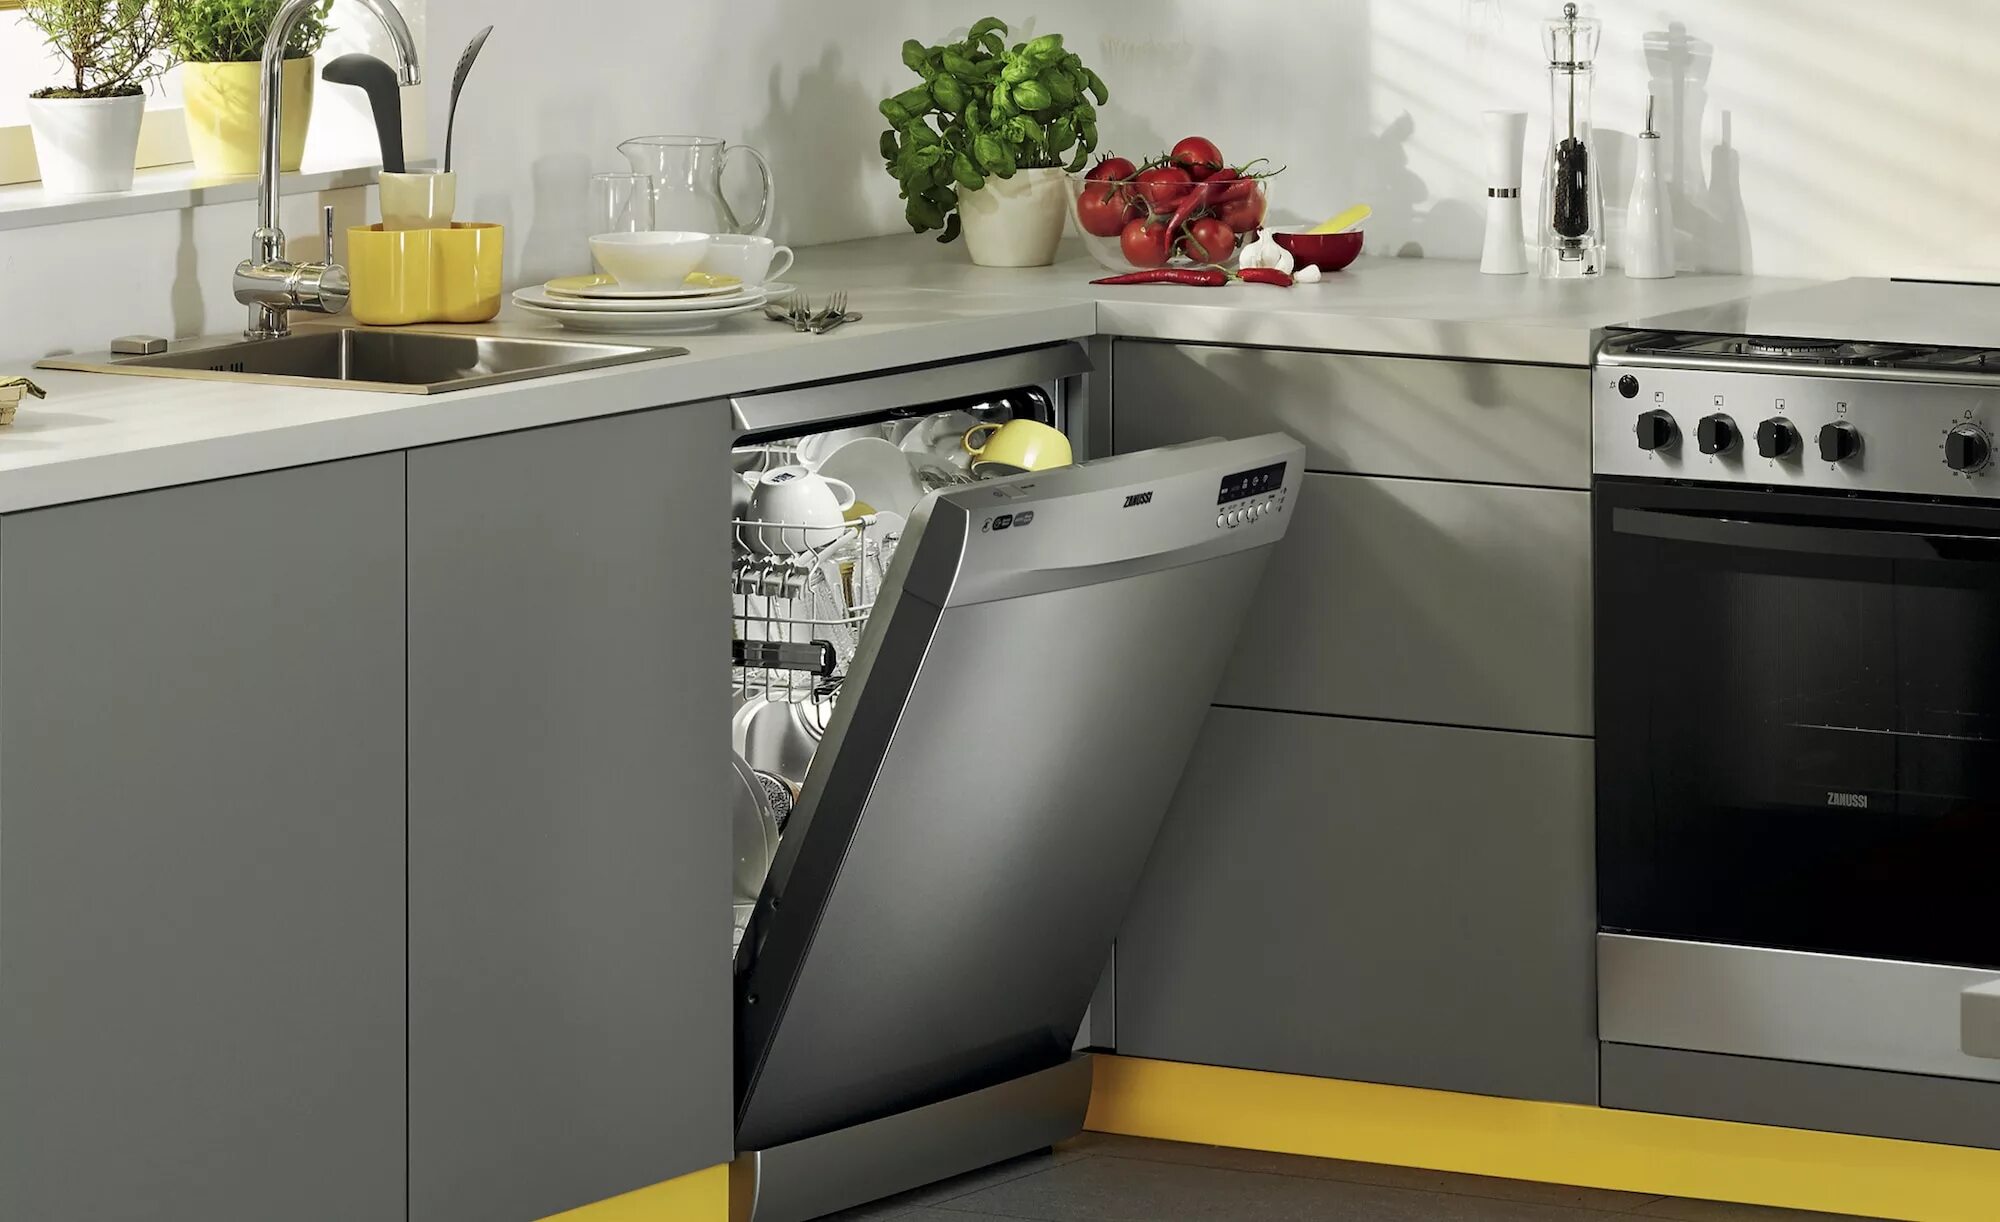 Какую посудомоечную встраиваемую купить. Занусси посудомоечная машина встроенная. Посудомойка Вирпул встраиваемая BWF 00 S. Посудомоечная машина Dometic dw2440. Встраиваемая посудомоечная машина Hi hbi6022.